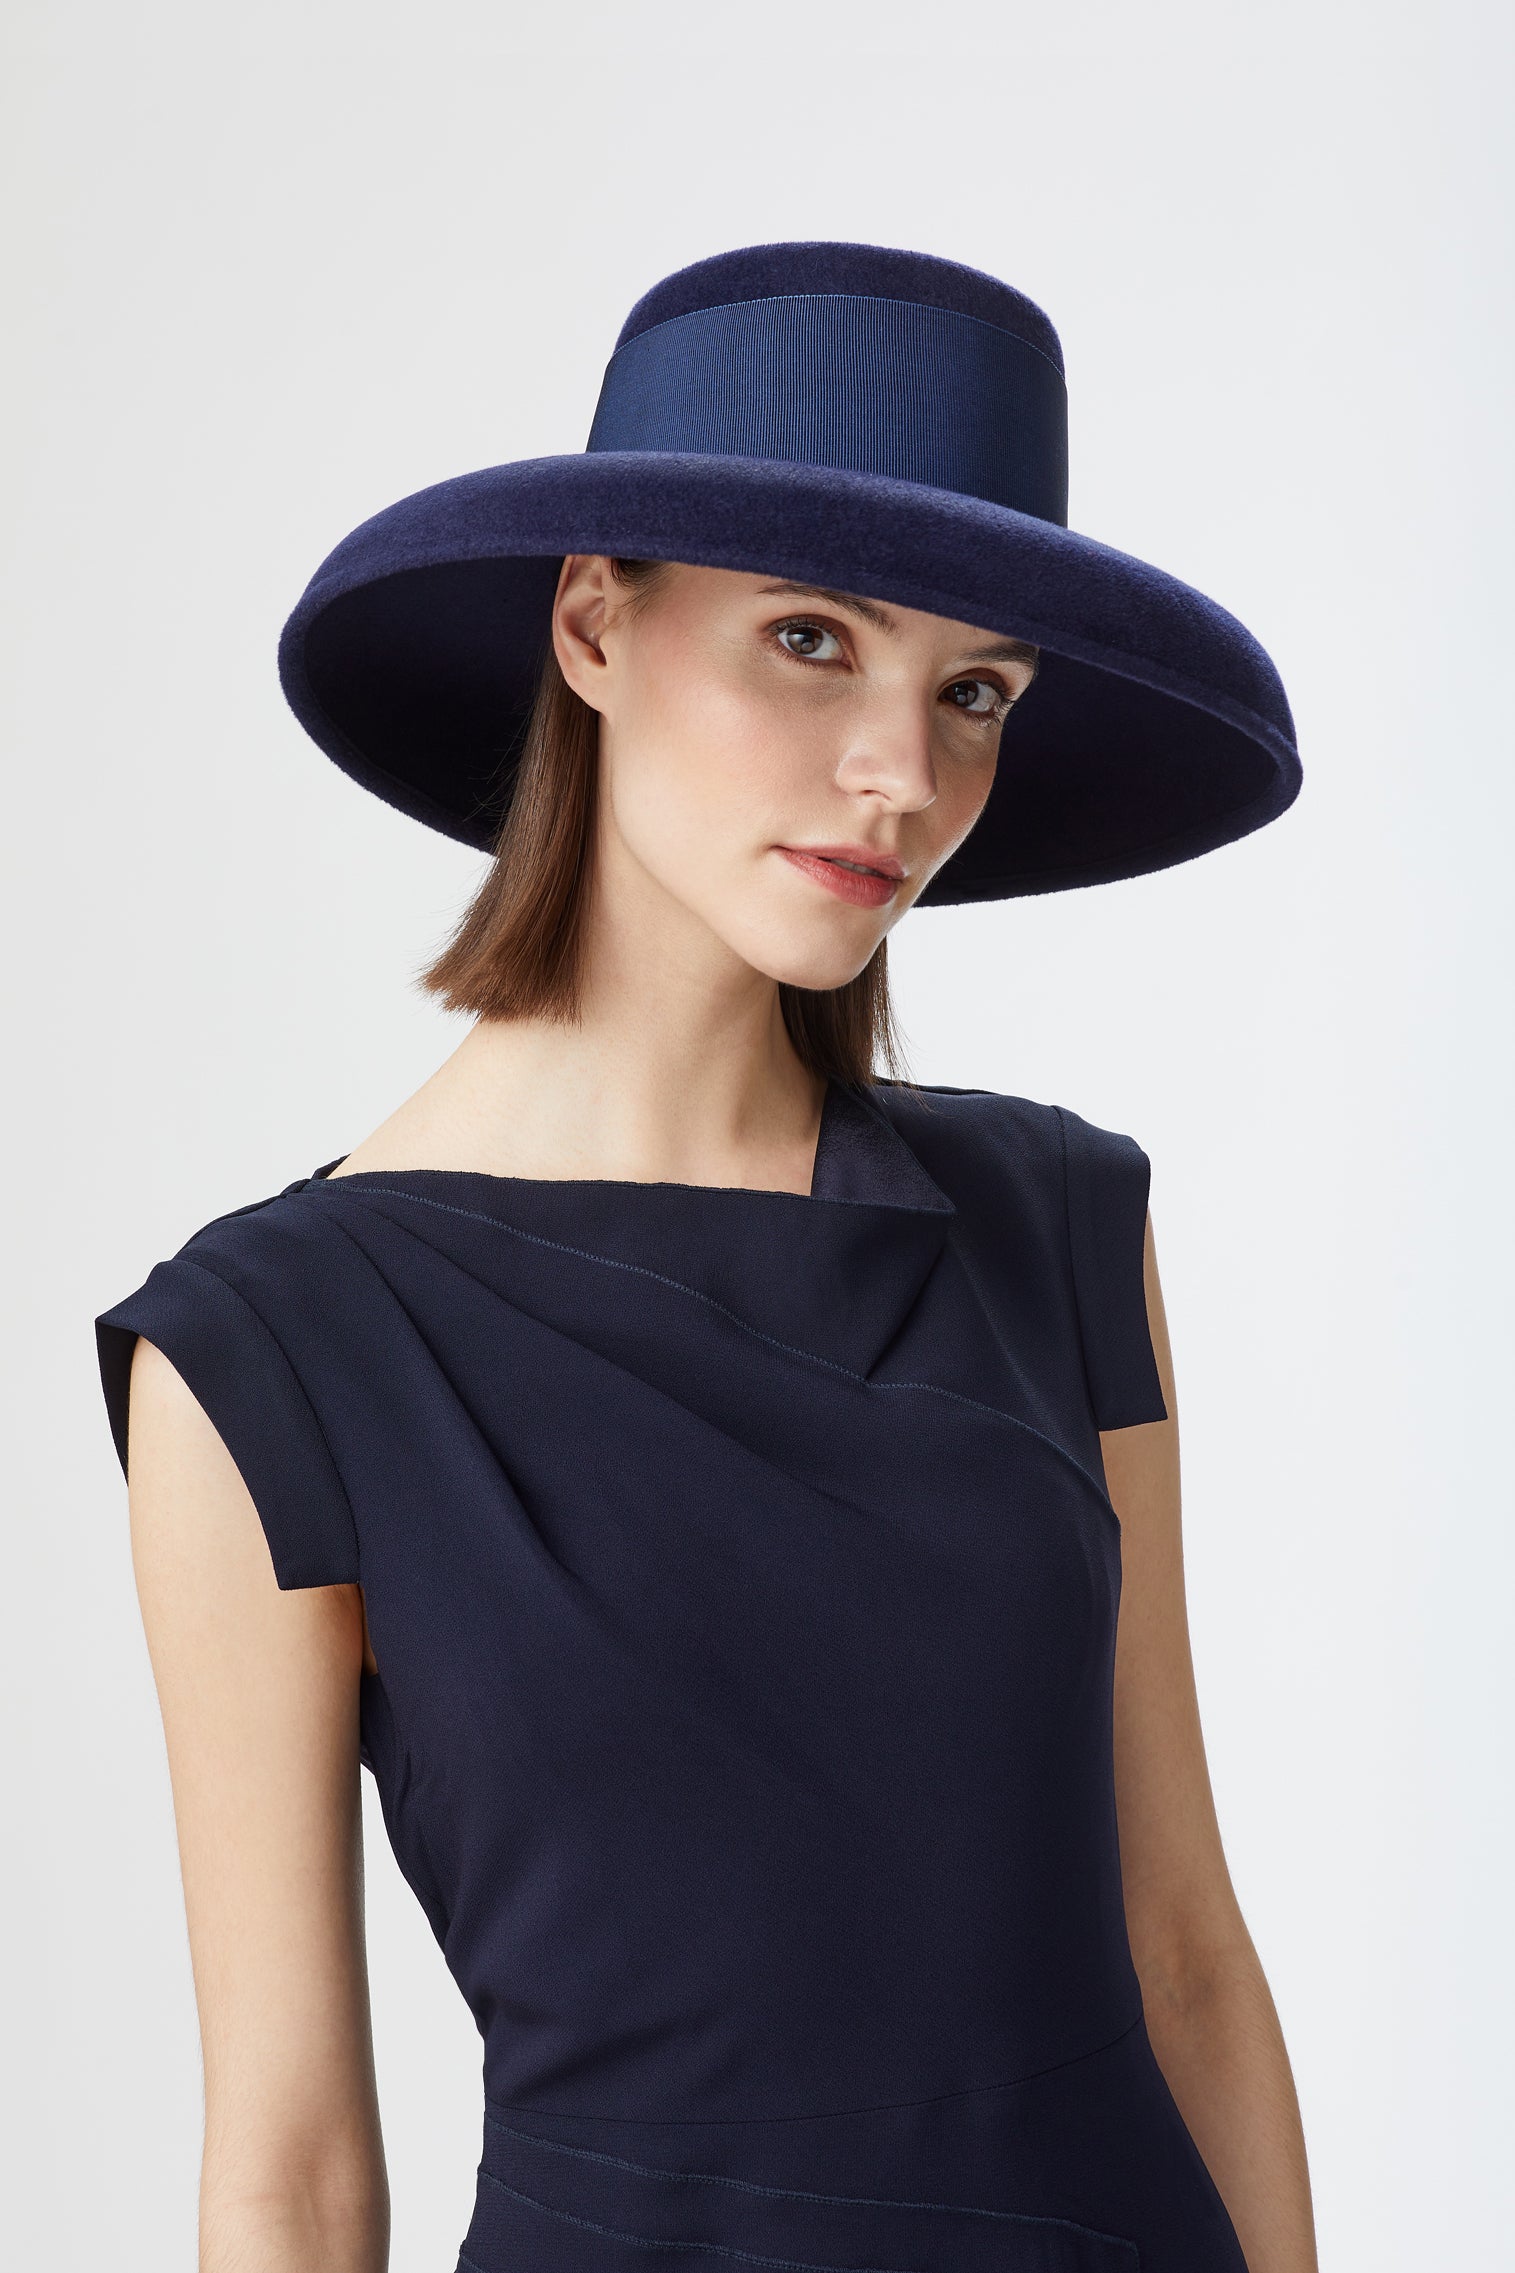 Tiffany Drop-Brim Hat - Black Hats & Headpieces for Women - Lock & Co. Hatters London UK